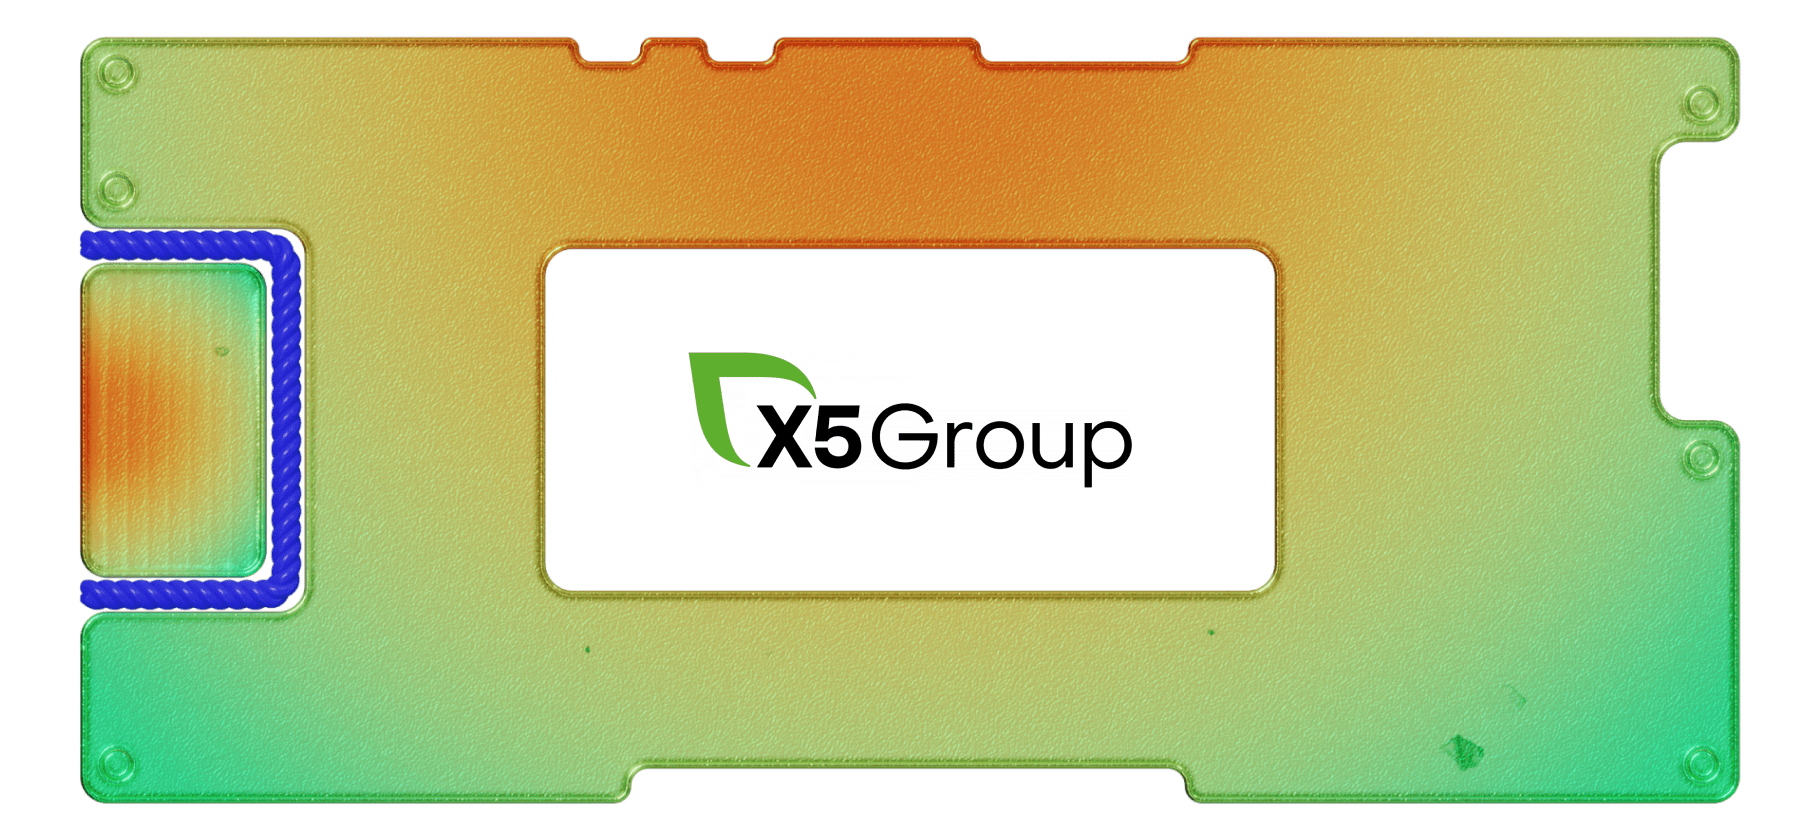 Обзор X5 Group: лидер сектора продуктового ретейла